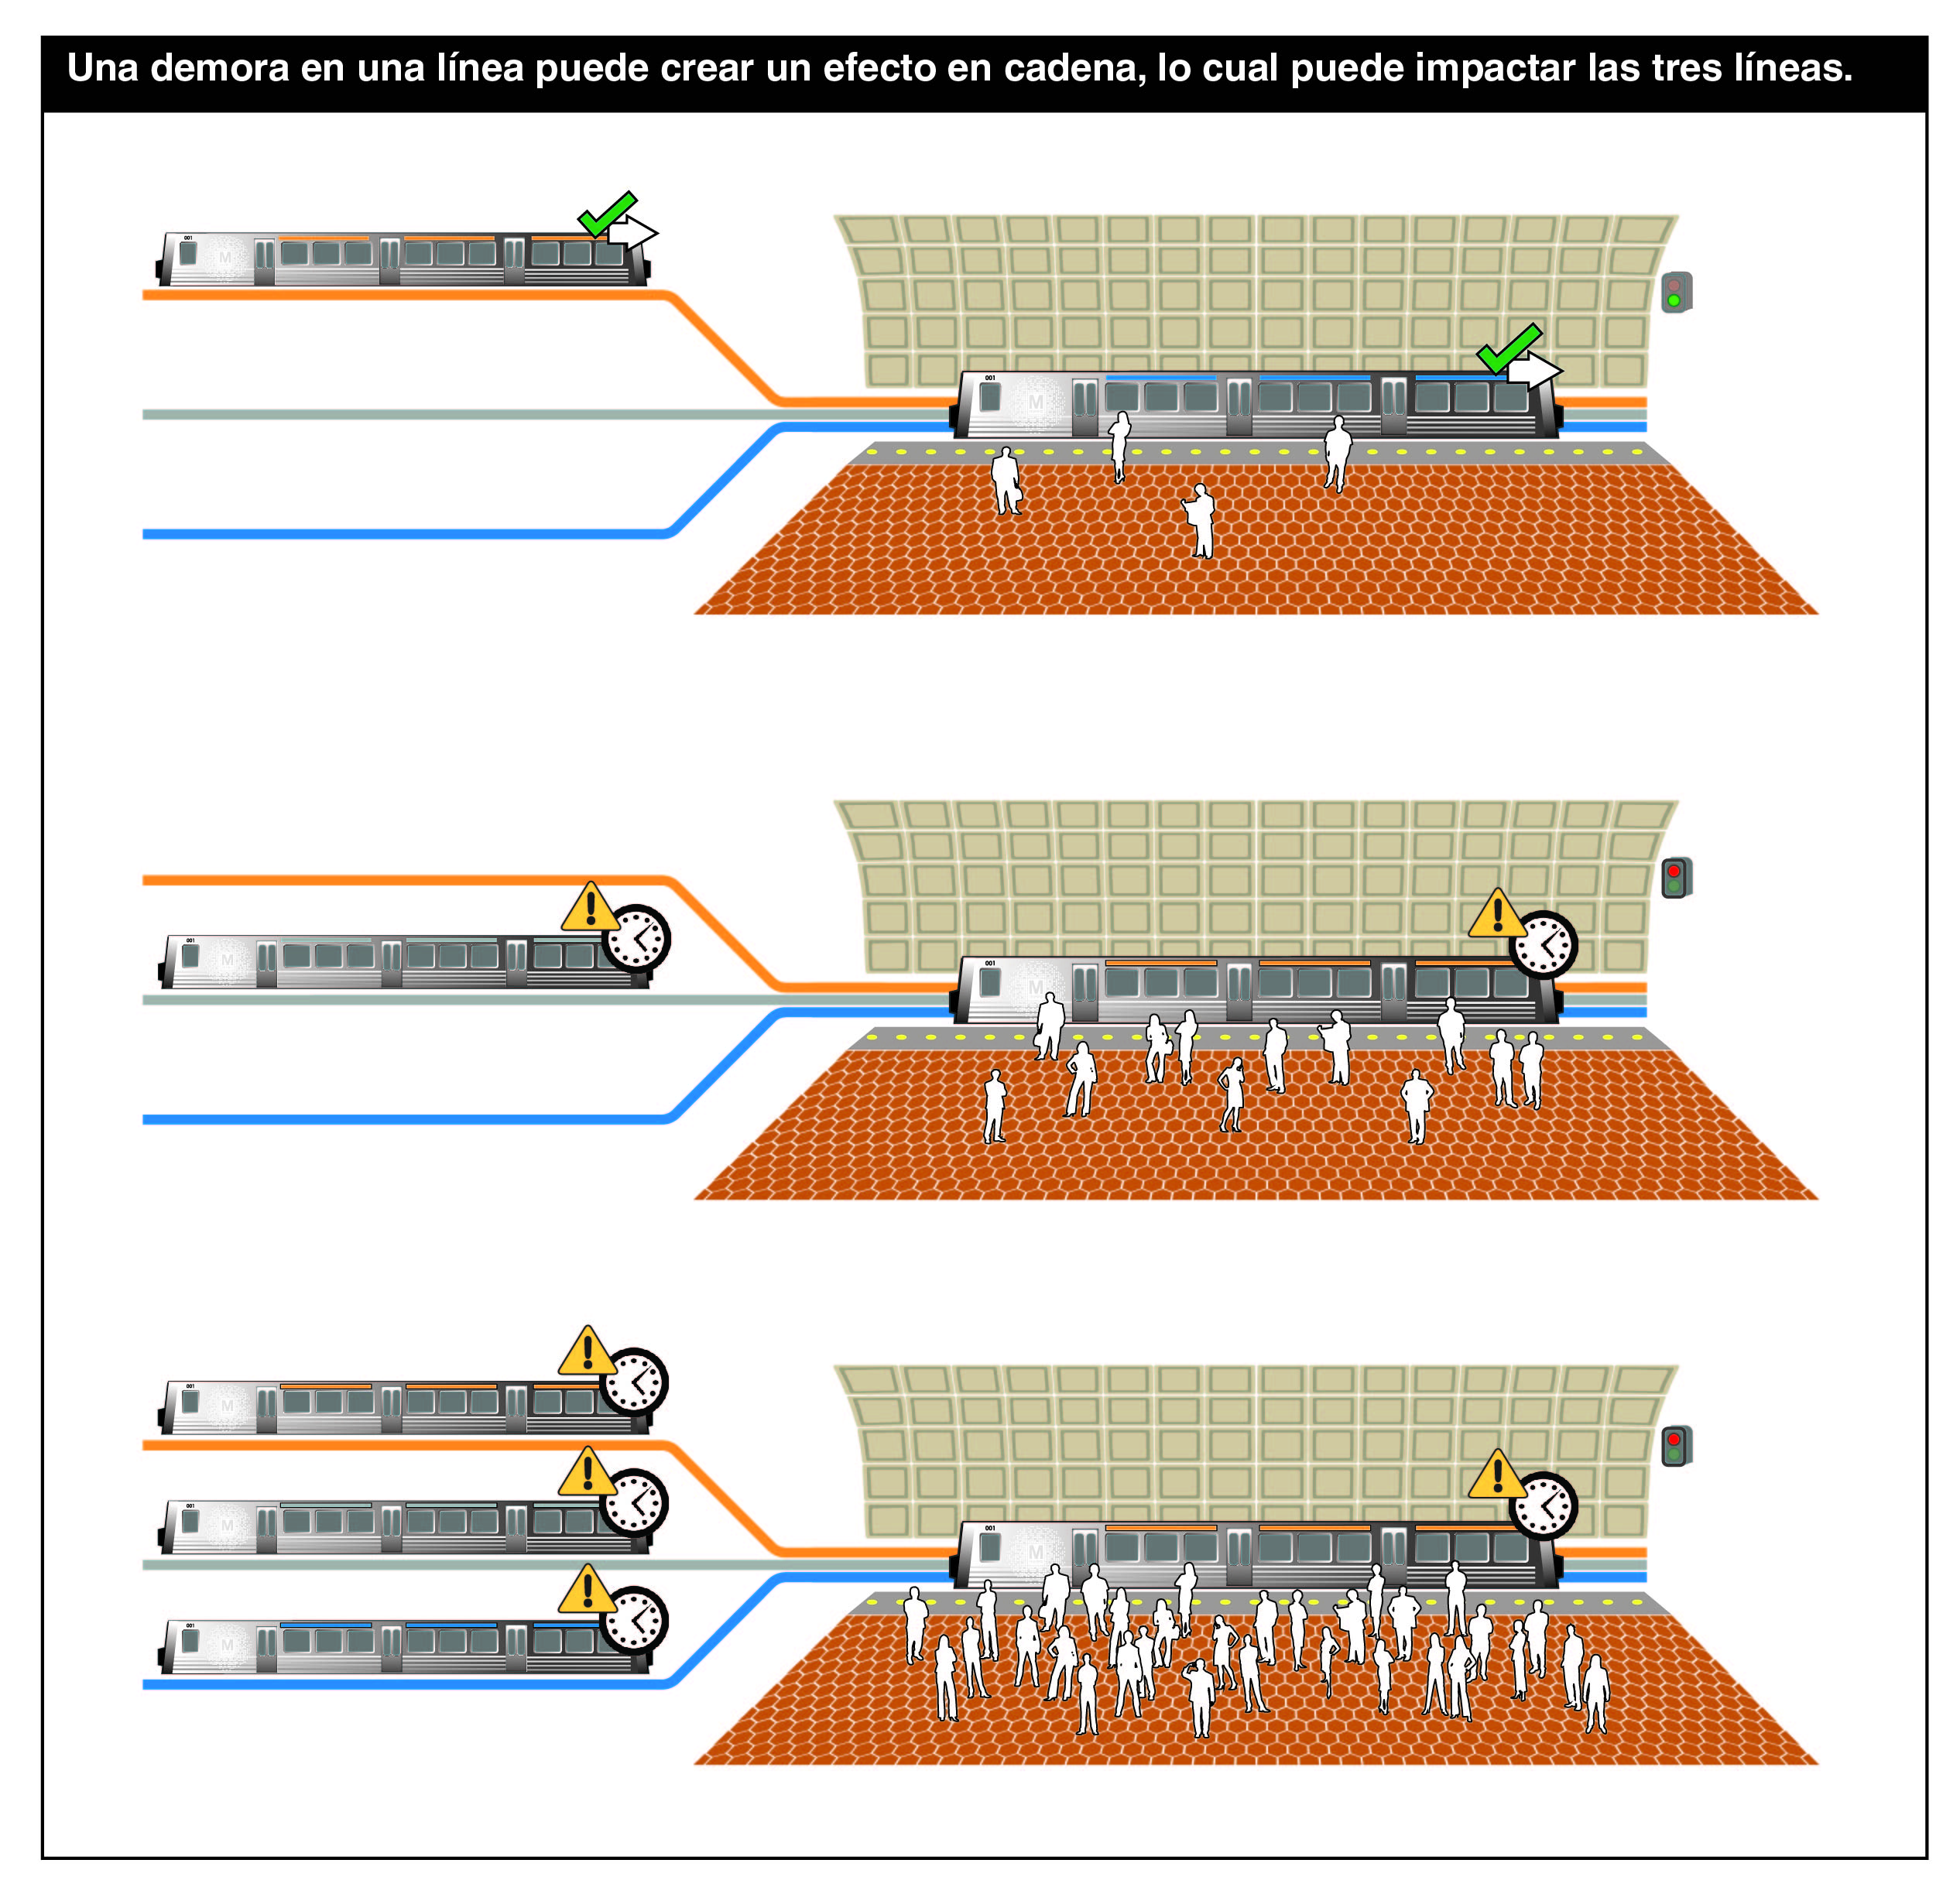 Ilustración que muestra cómo las demoras en una línea afectan al servicio en las tres líneas.